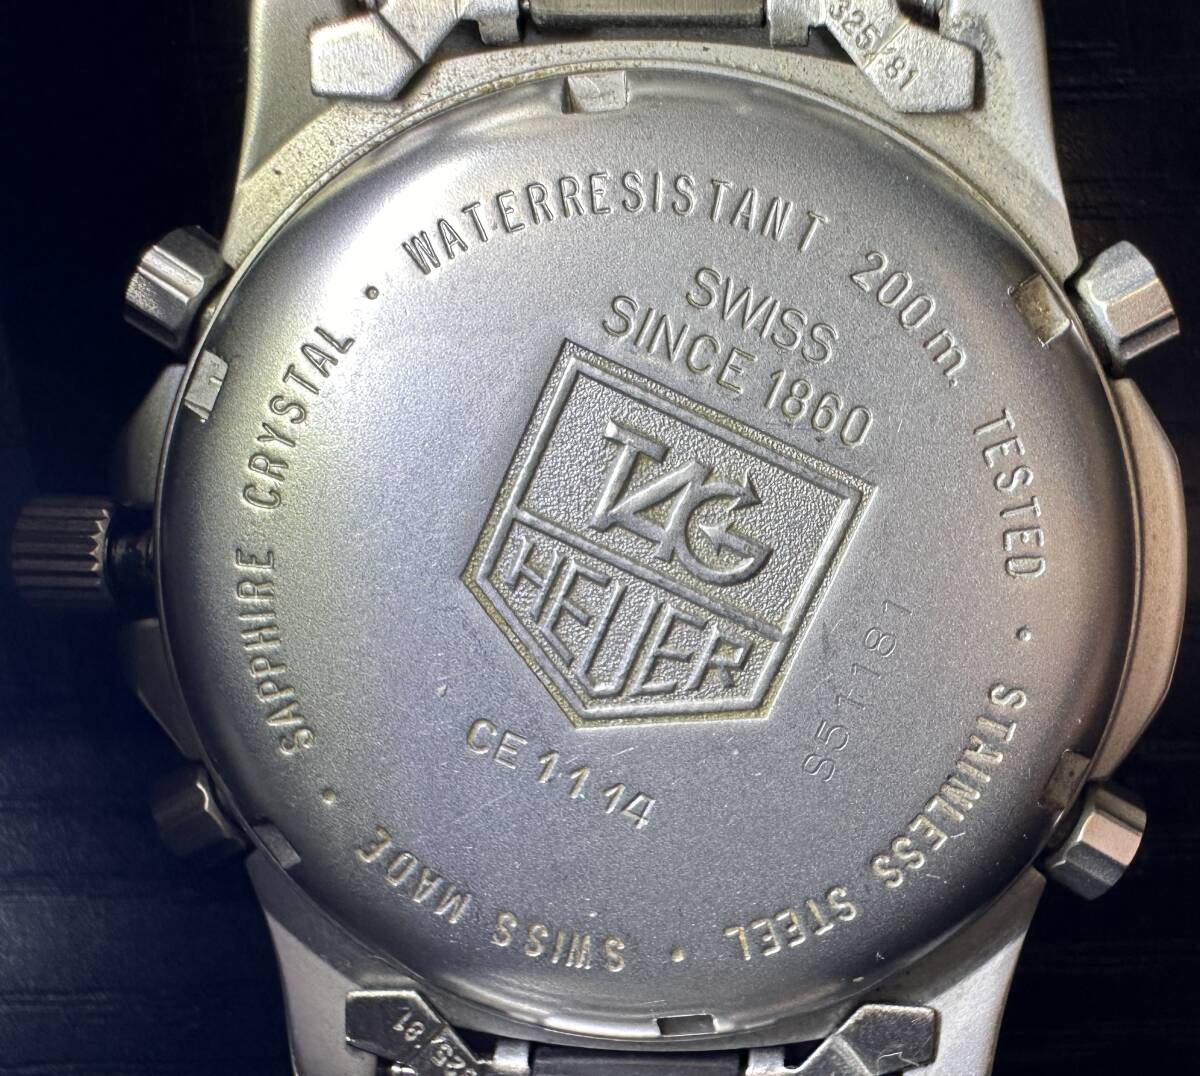 腕時計 TAG HEUER 1/100 200m PROFESSIONAL TESTED CE 1114 SINCE 1860 SS WATER RESISTANT S51181 タグホイヤー 112.05g メンズ 10D198WAの画像5